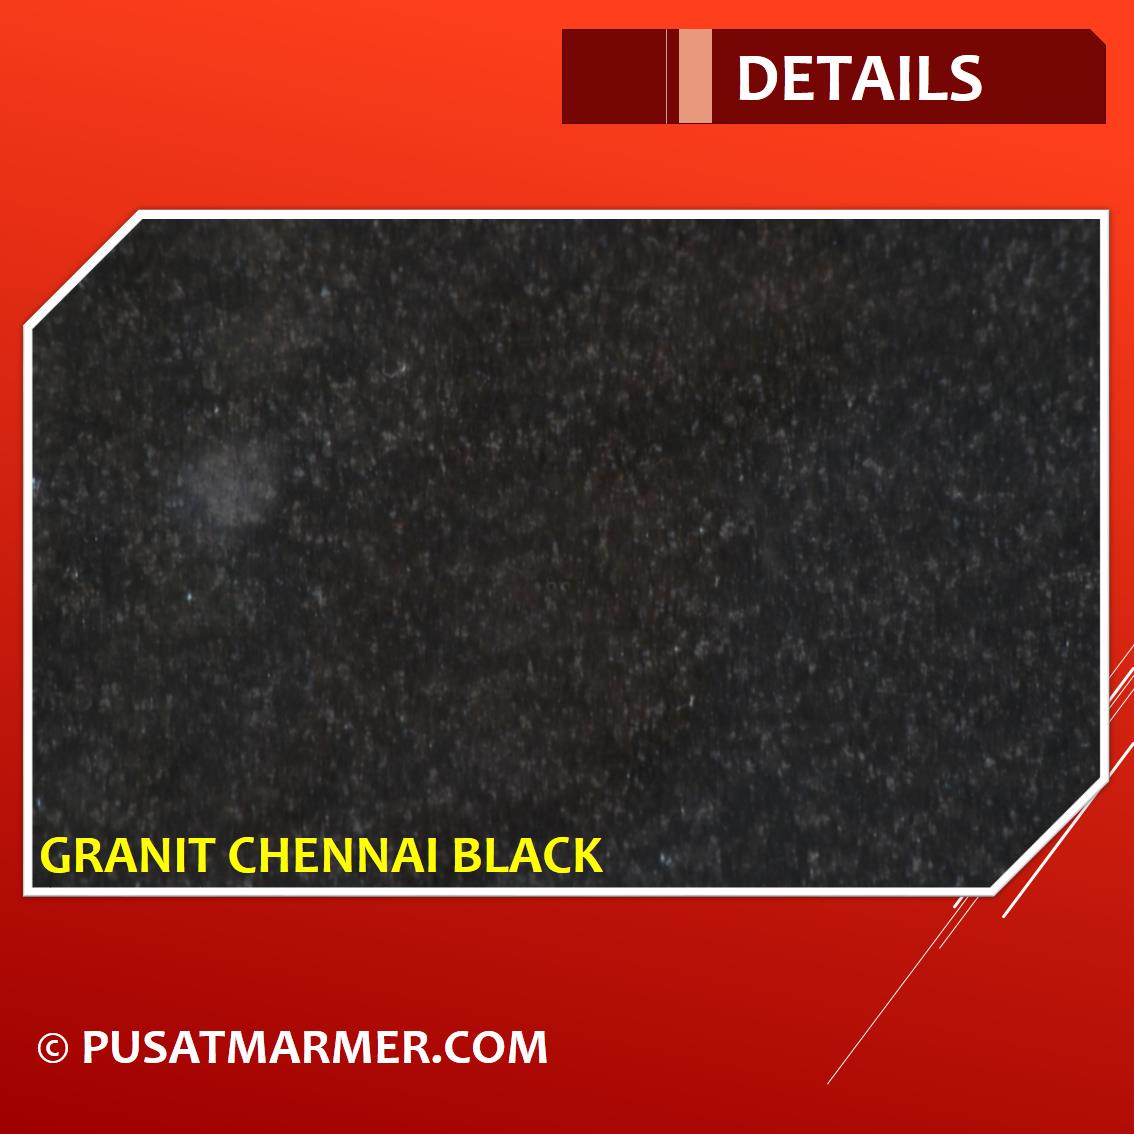 Jual Granit Chennai Black Murah Tersedia Berbagai Ukuran 